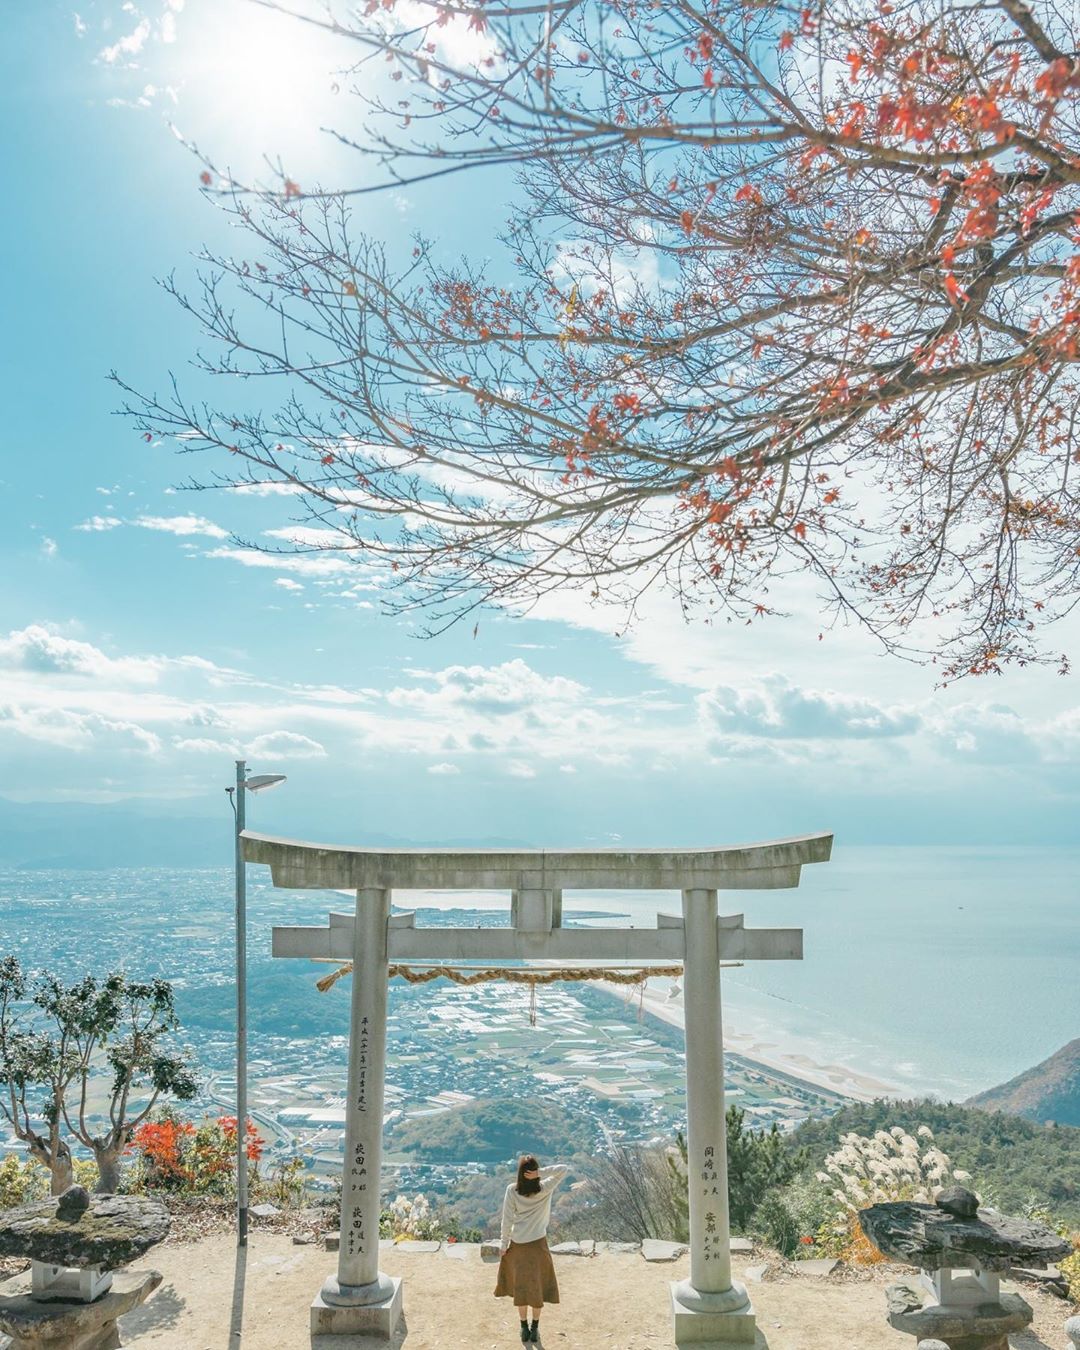 夢幻度破錶 天空鳥居 日本香川縣高屋神社 隨意一拍都是桌布質素的照片 Girlsmood 女生感覺